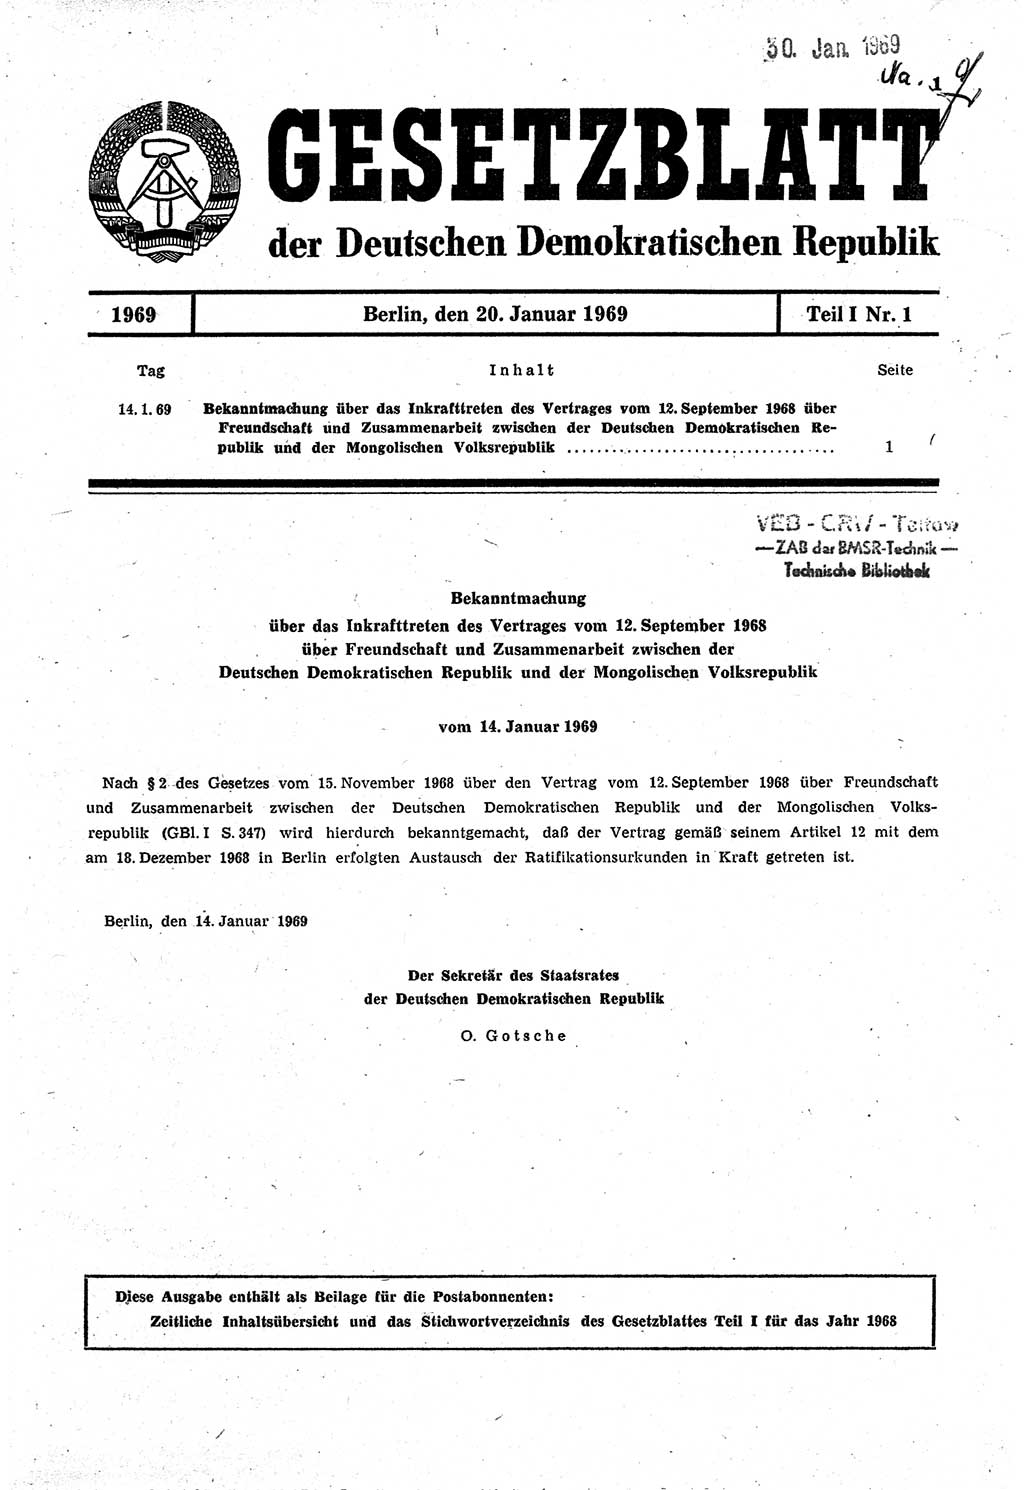 Gesetzblatt (GBl.) der Deutschen Demokratischen Republik (DDR) Teil Ⅰ 1969, Seite 1 (GBl. DDR Ⅰ 1969, S. 1)